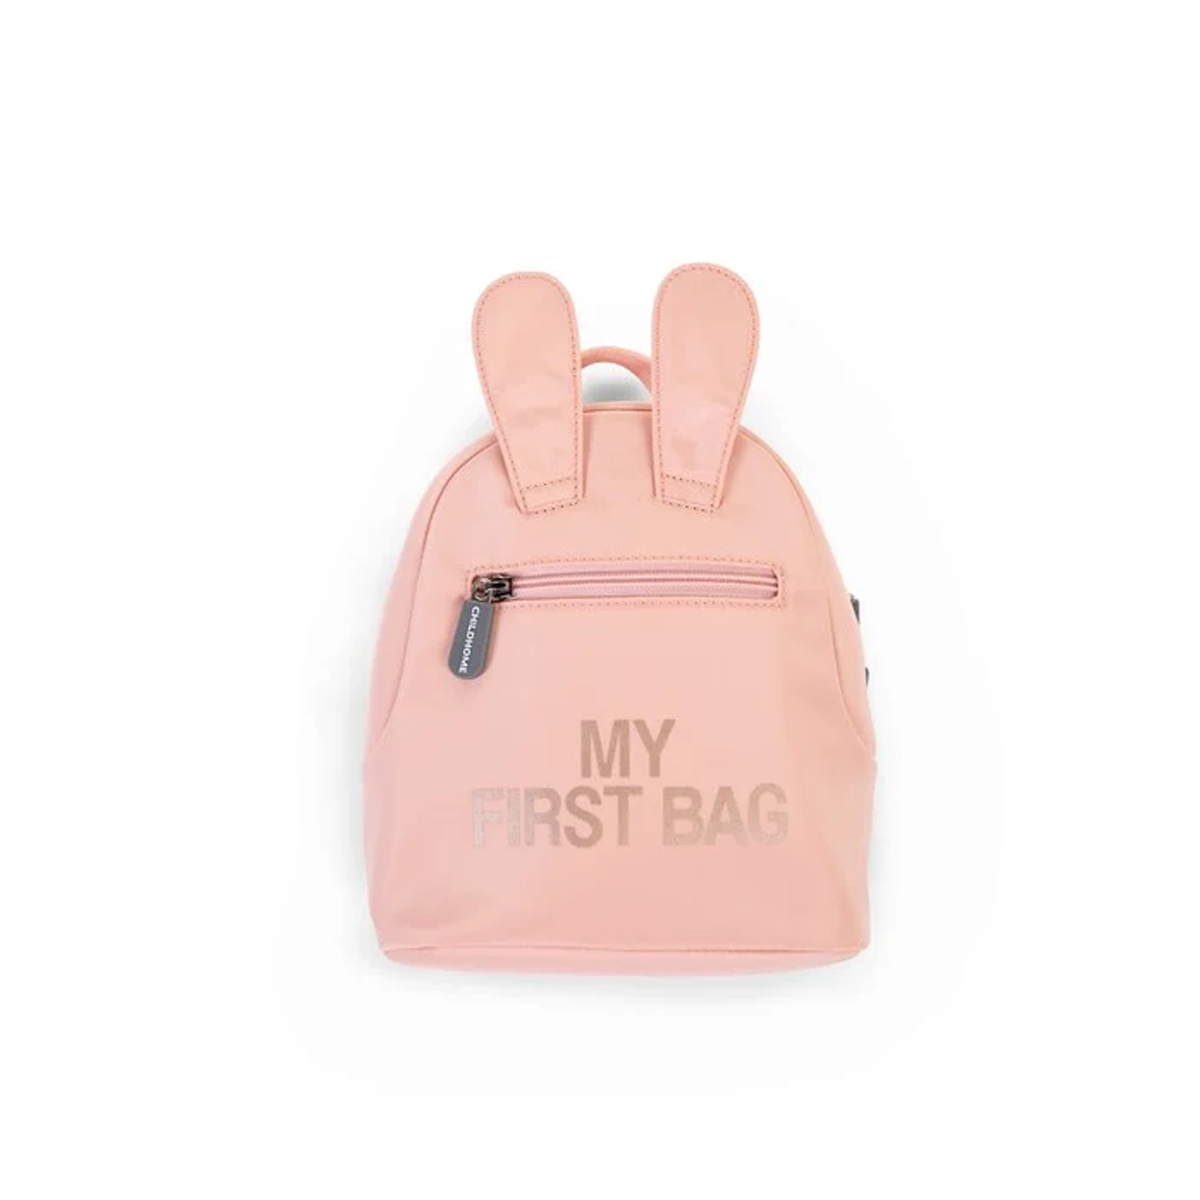 Παιδικό σακίδιο My first bag pink Childhome